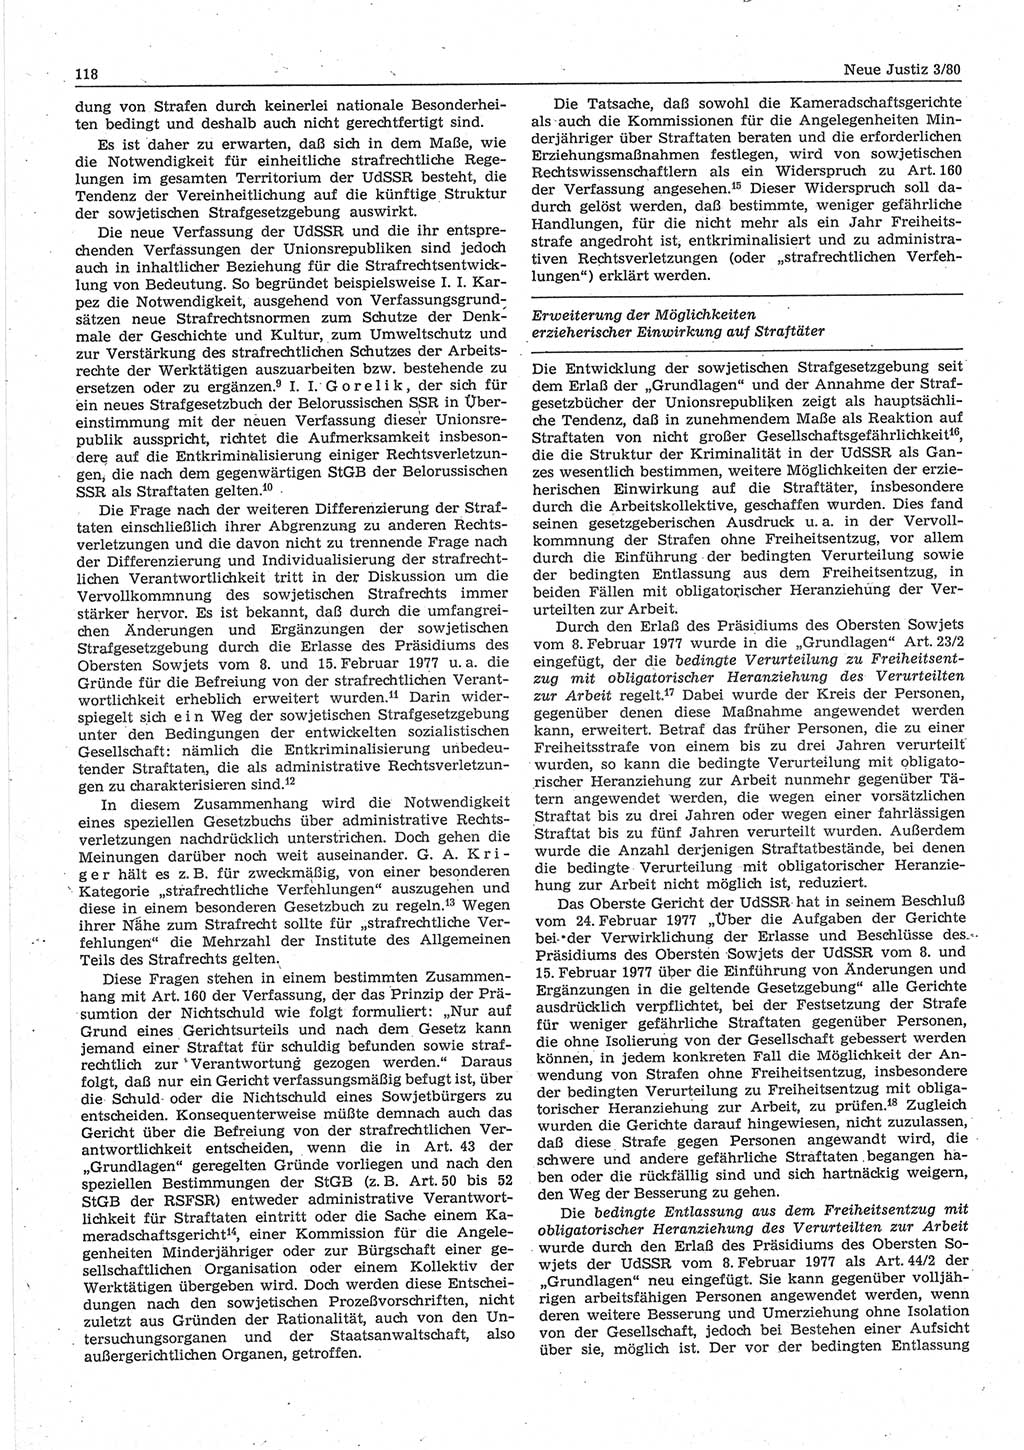 Neue Justiz (NJ), Zeitschrift für sozialistisches Recht und Gesetzlichkeit [Deutsche Demokratische Republik (DDR)], 34. Jahrgang 1980, Seite 118 (NJ DDR 1980, S. 118)